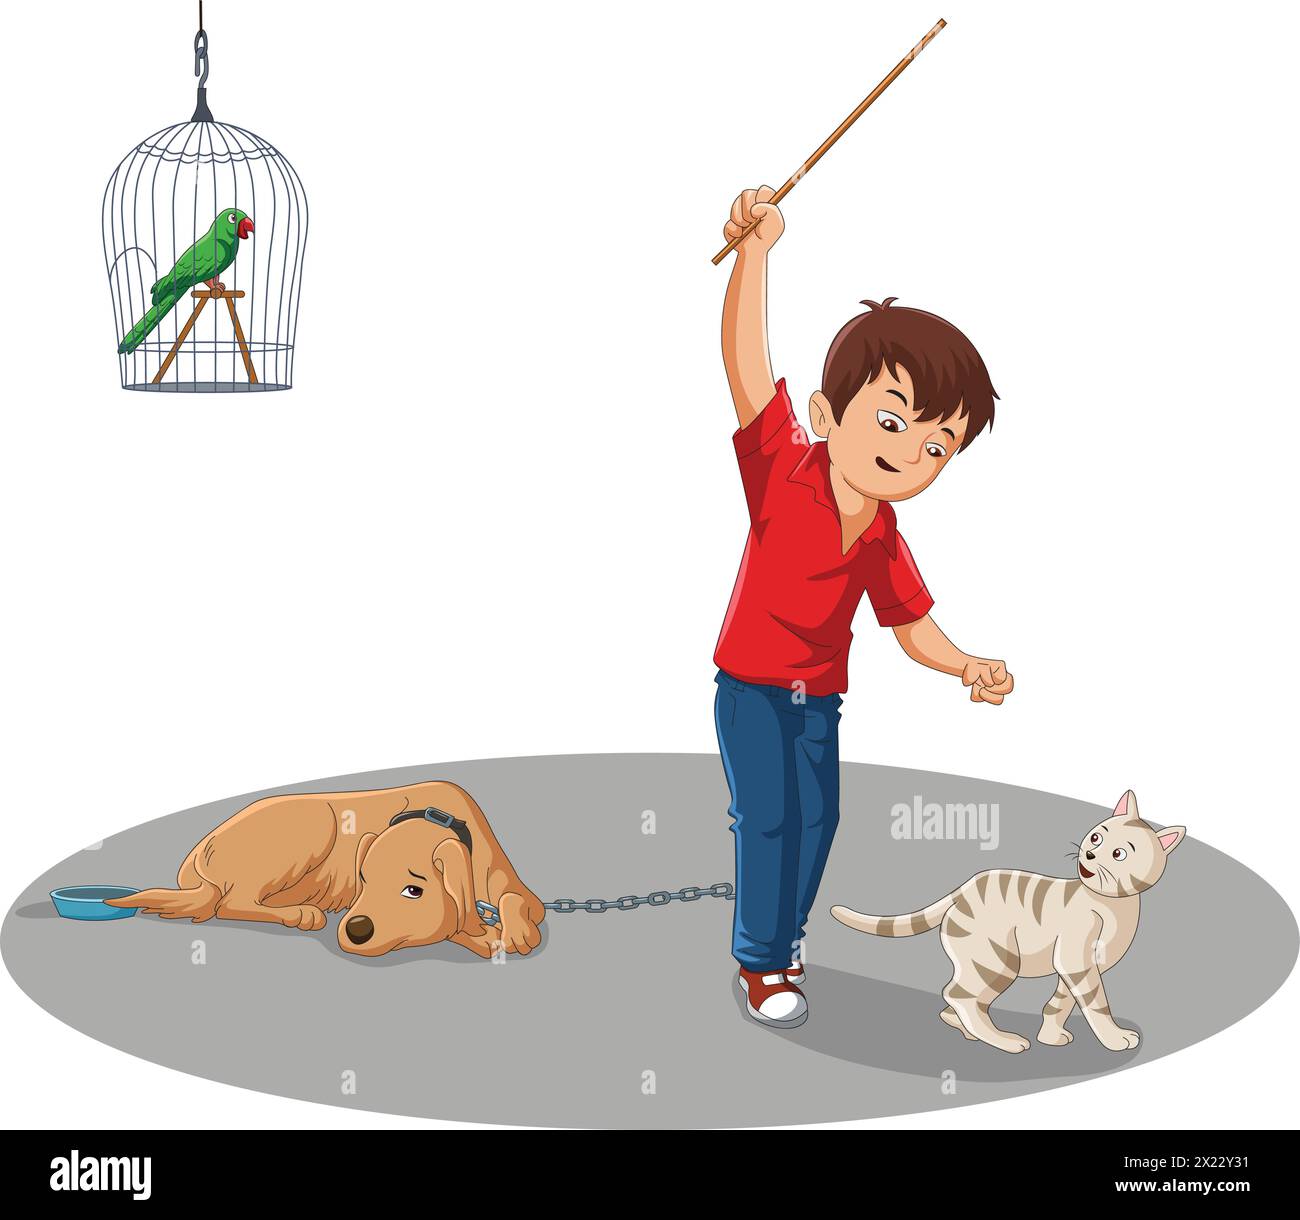 Illustration vectorielle montrant un perroquet en cage, un chien enchaîné et un garçon frappant un chat Illustration de Vecteur